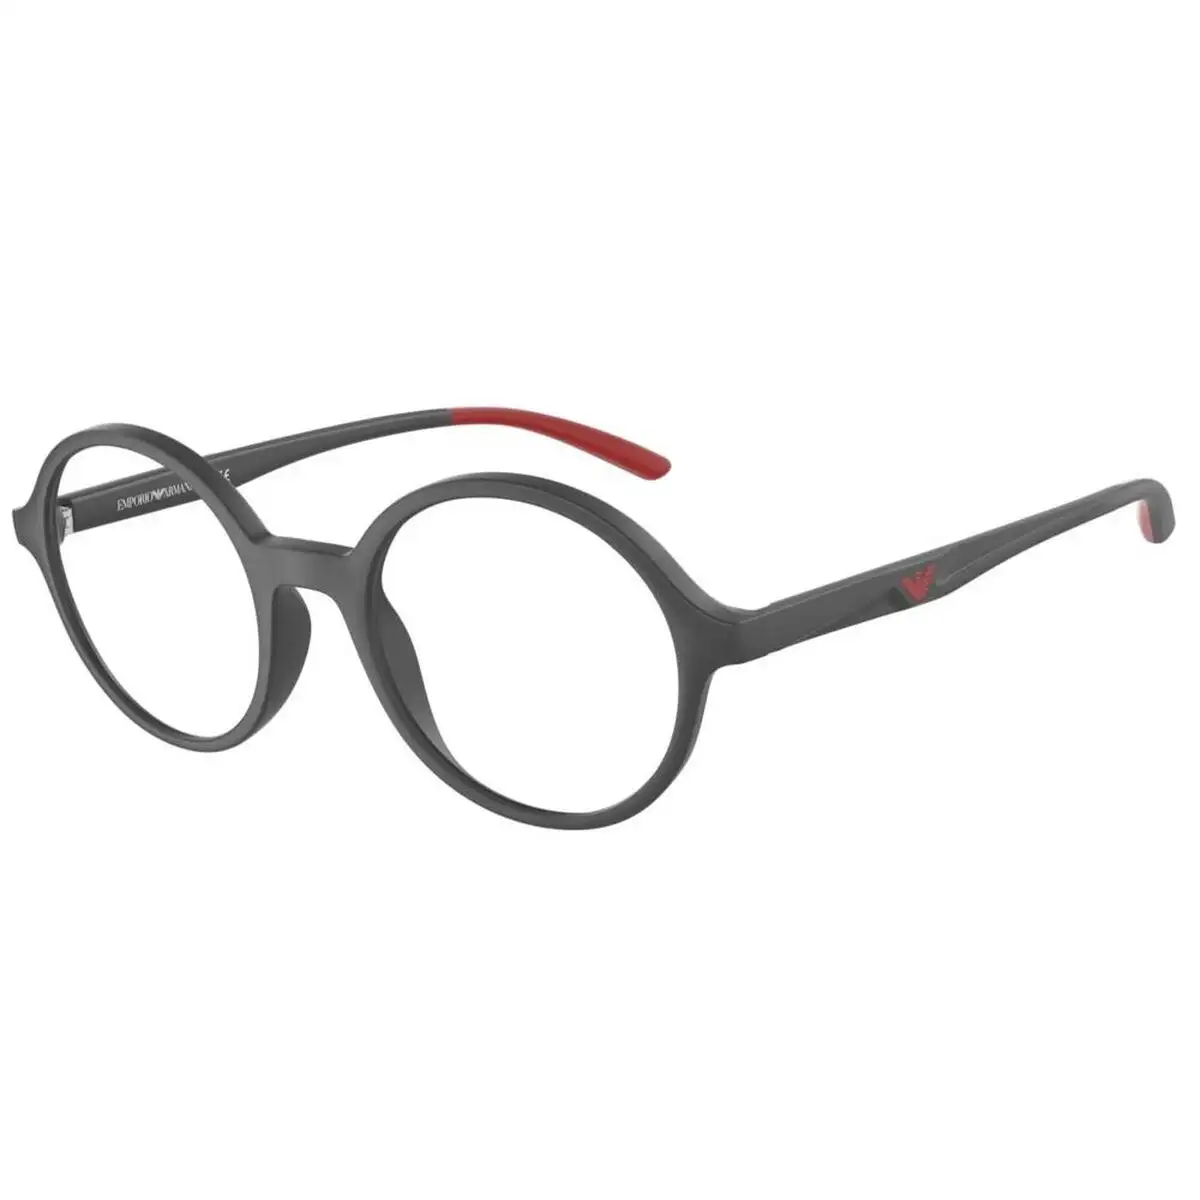 Monture de lunettes homme emporio armani ea 3197_9765. Bienvenue sur DIAYTAR SENEGAL - Votre Galerie Shopping Personnalisée. Découvrez un monde de produits diversifiés qui expriment votre style unique et votre passion pour la qualité.